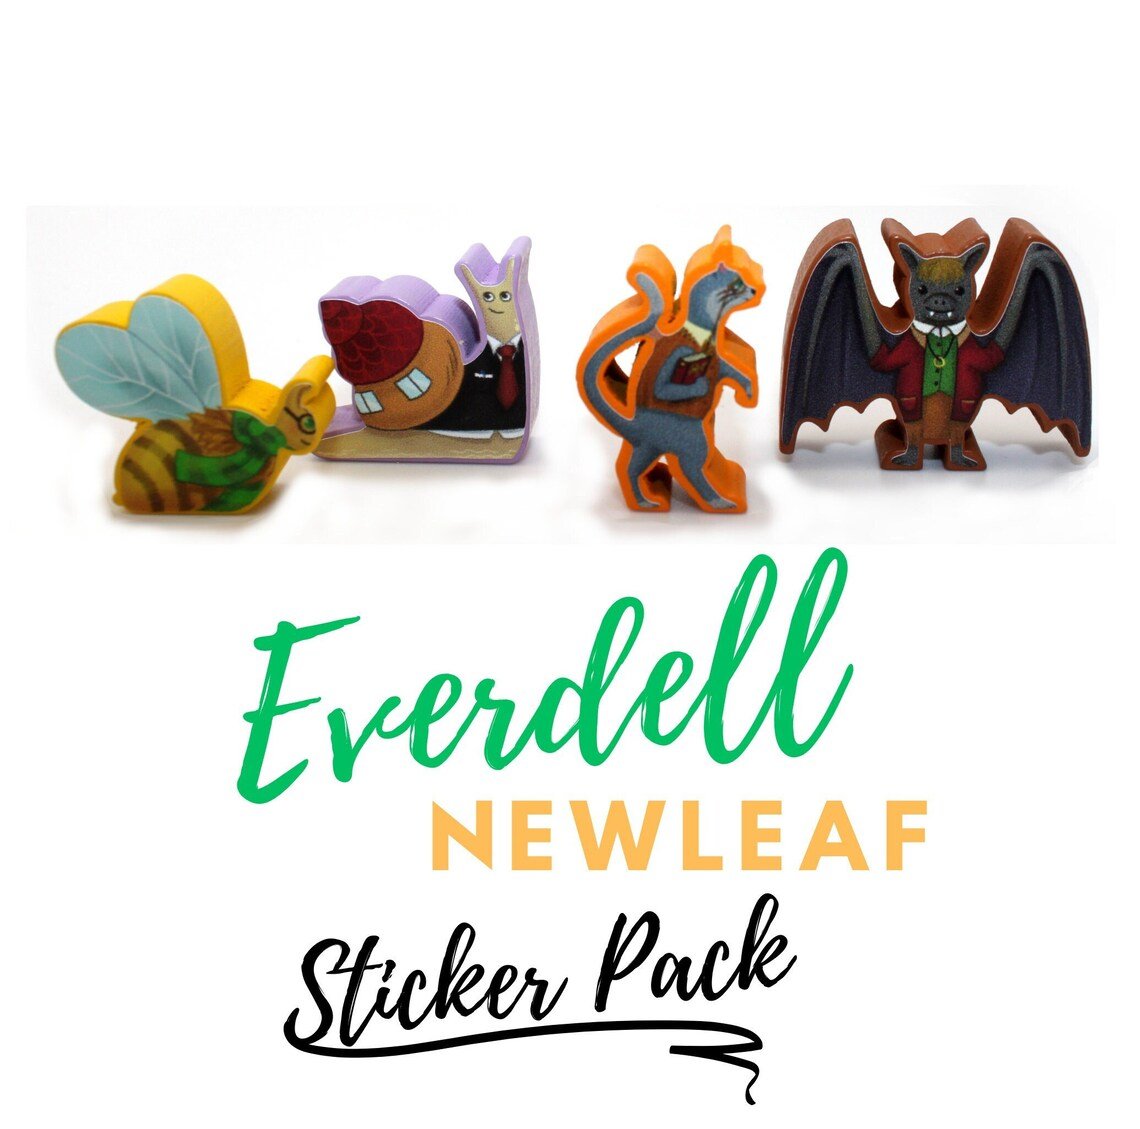 Sticker für Everdell: Newleaf - Spielefürst